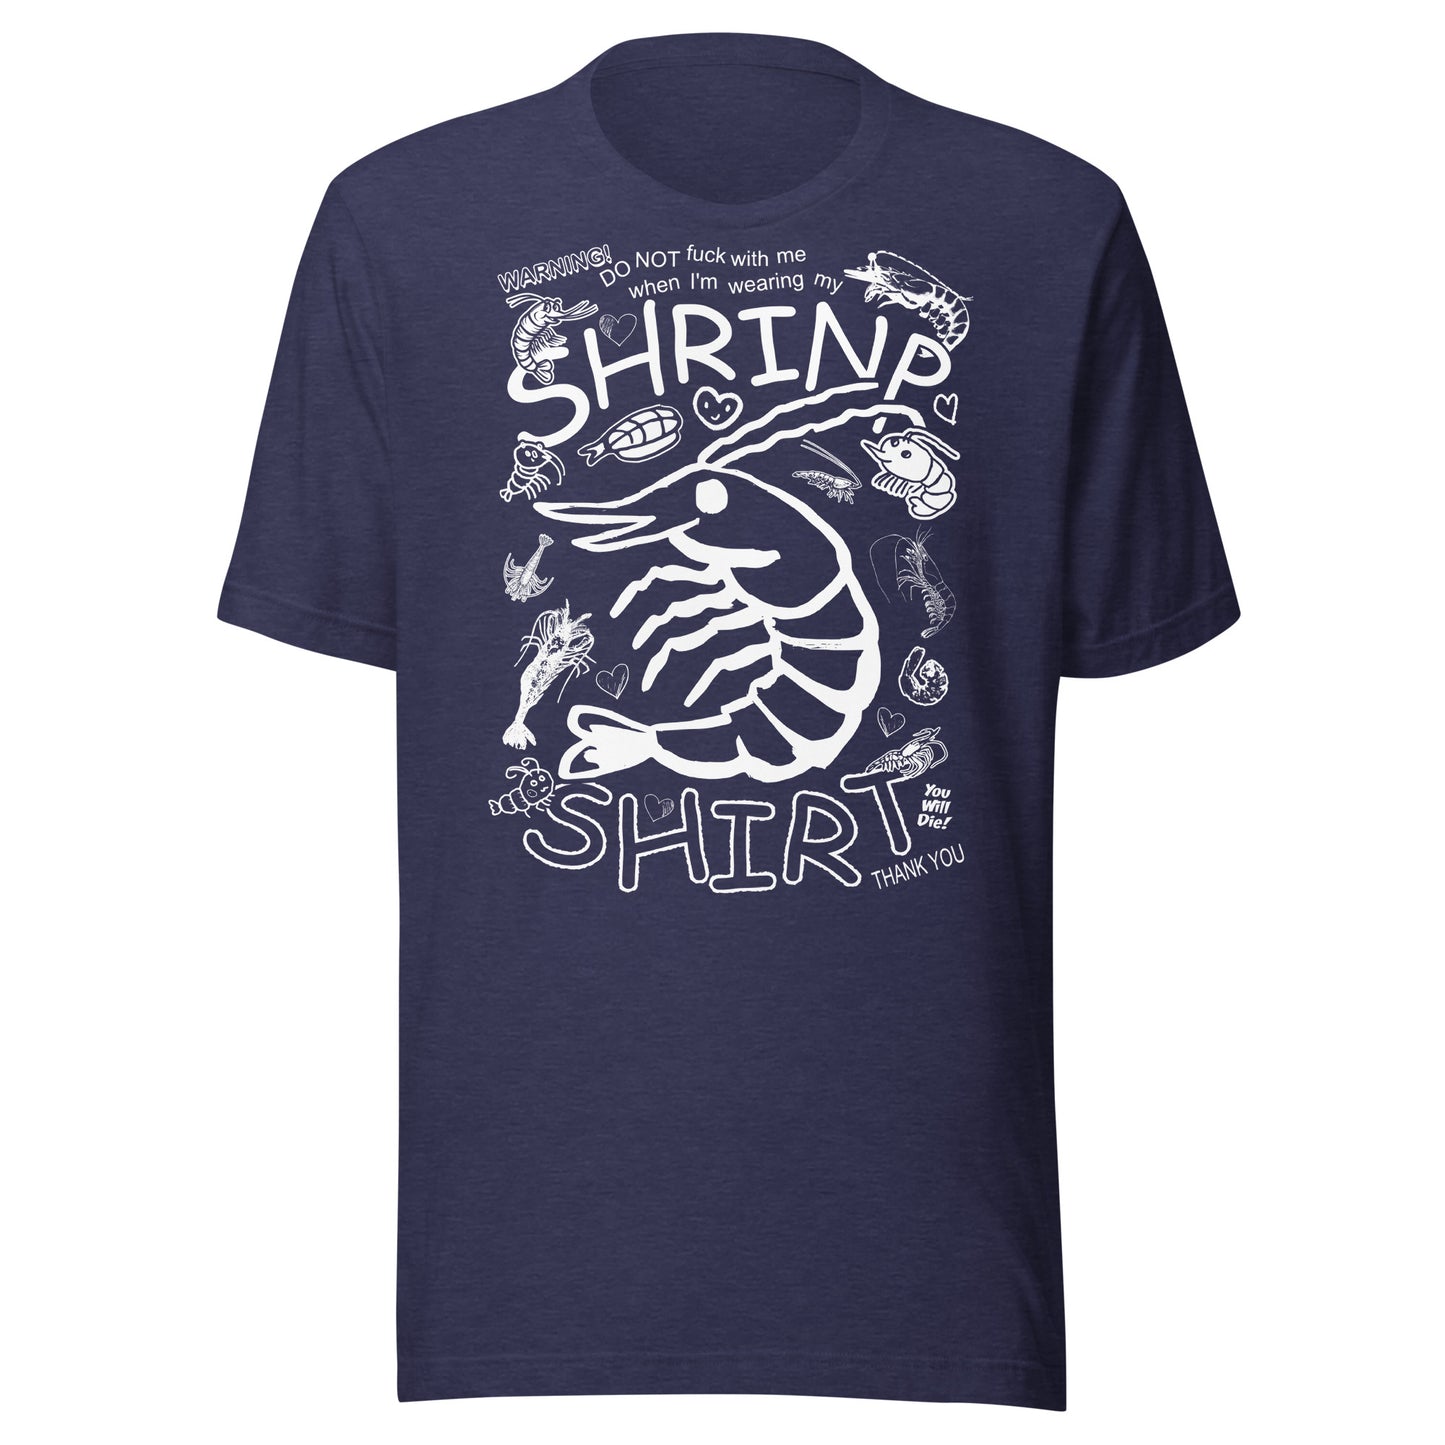 "SHRINP SHIRT" Unisex t-shirt